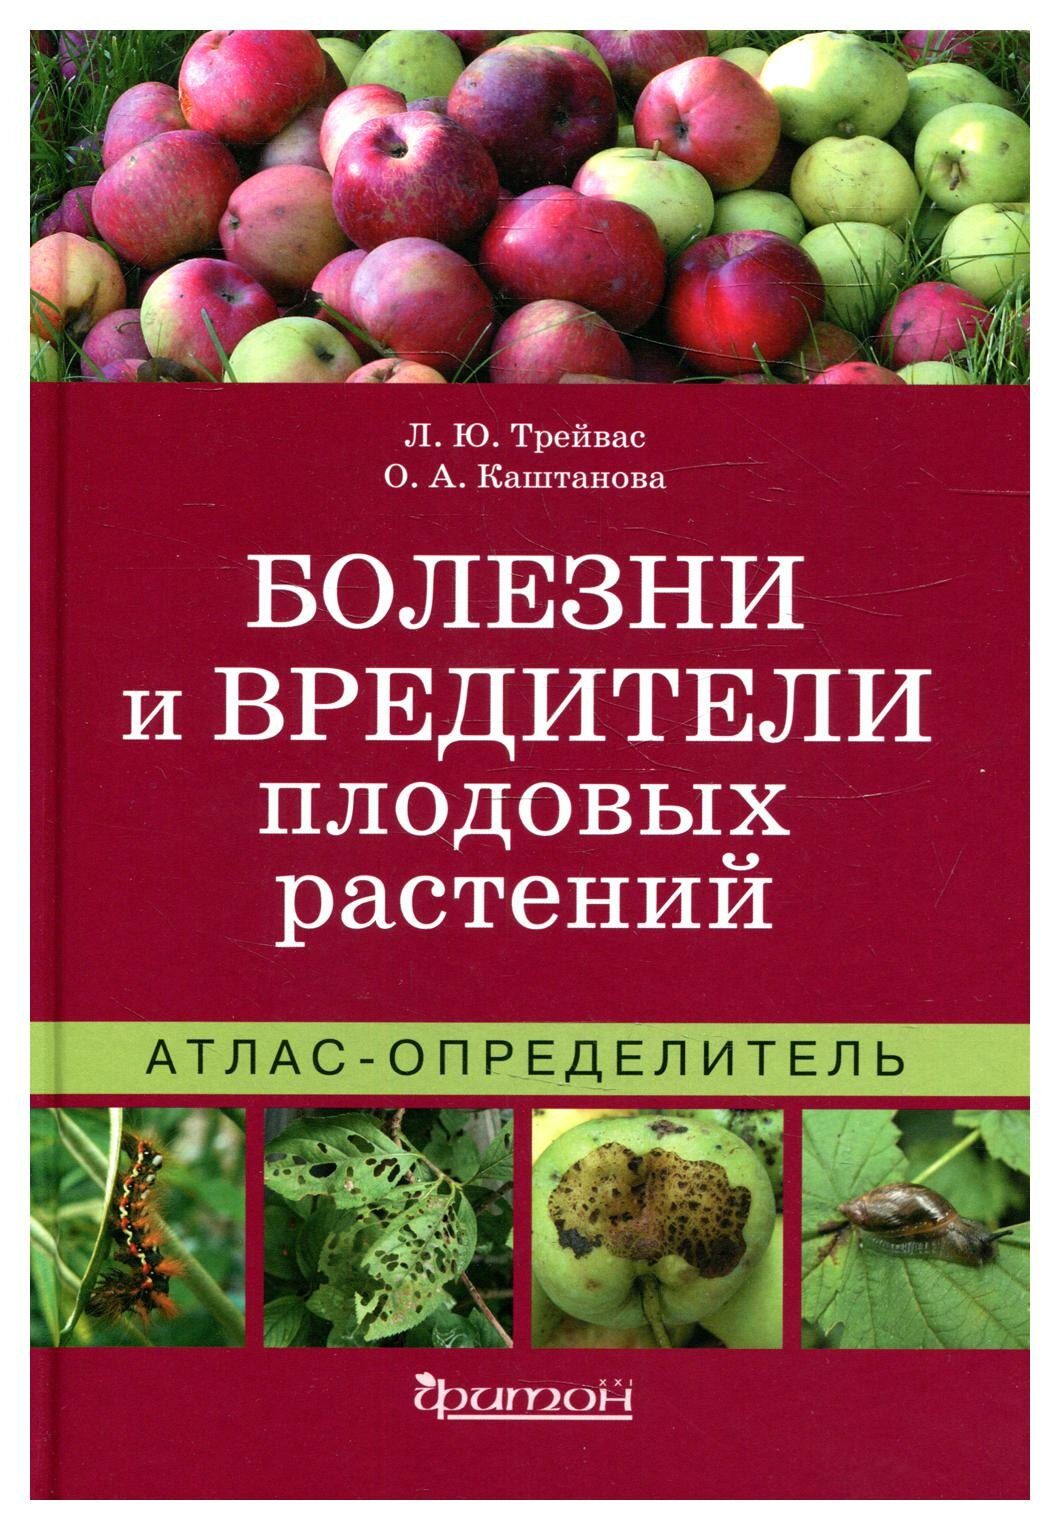 Болезни и вредители плодовых растений: Атлас-определитель. 3-е изд, испр. и доп